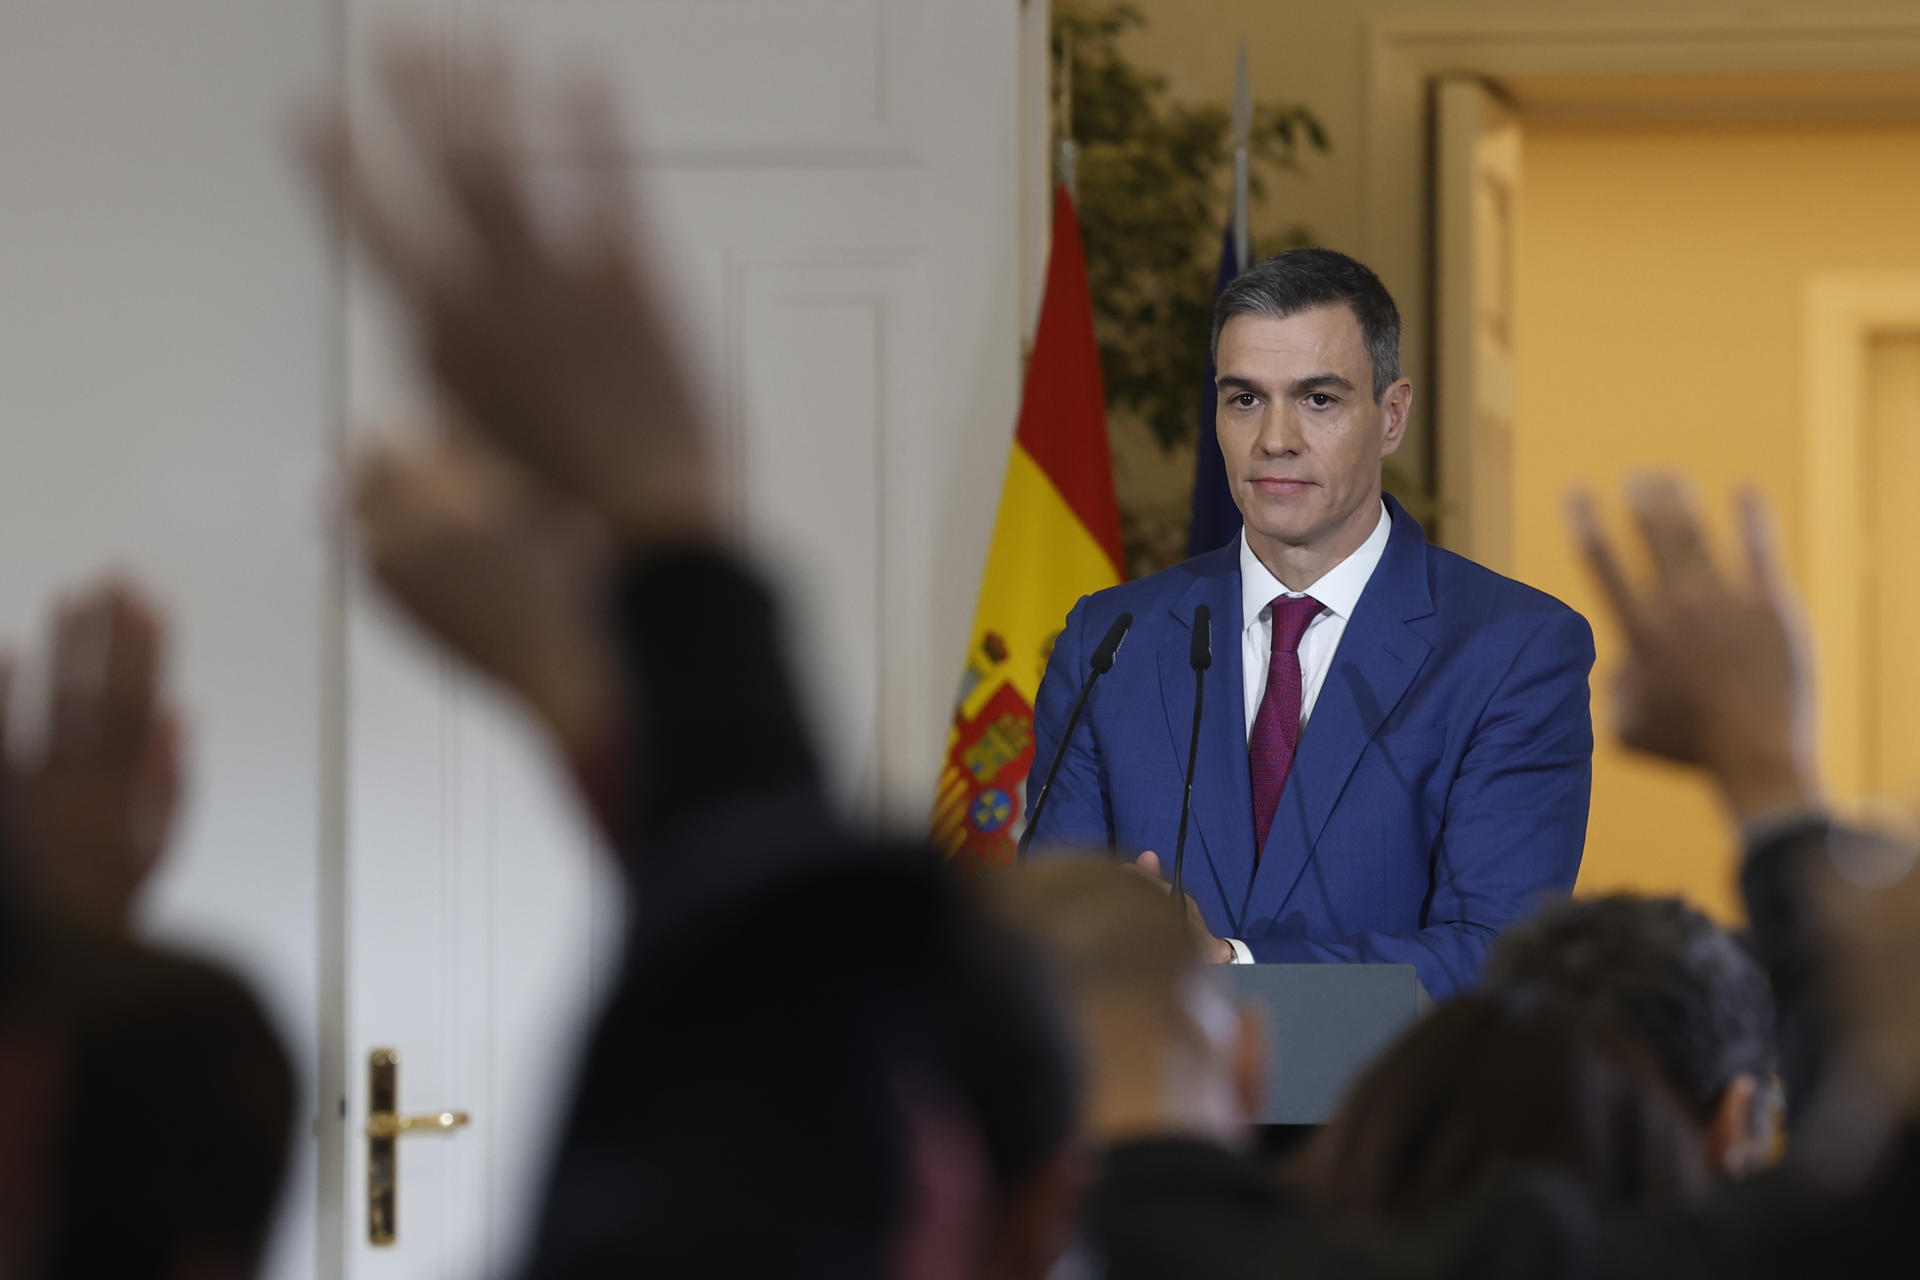 Pedro Sánchez respon la petició de referèndum de Pere Aragonès: “Res de nou sota el sol”